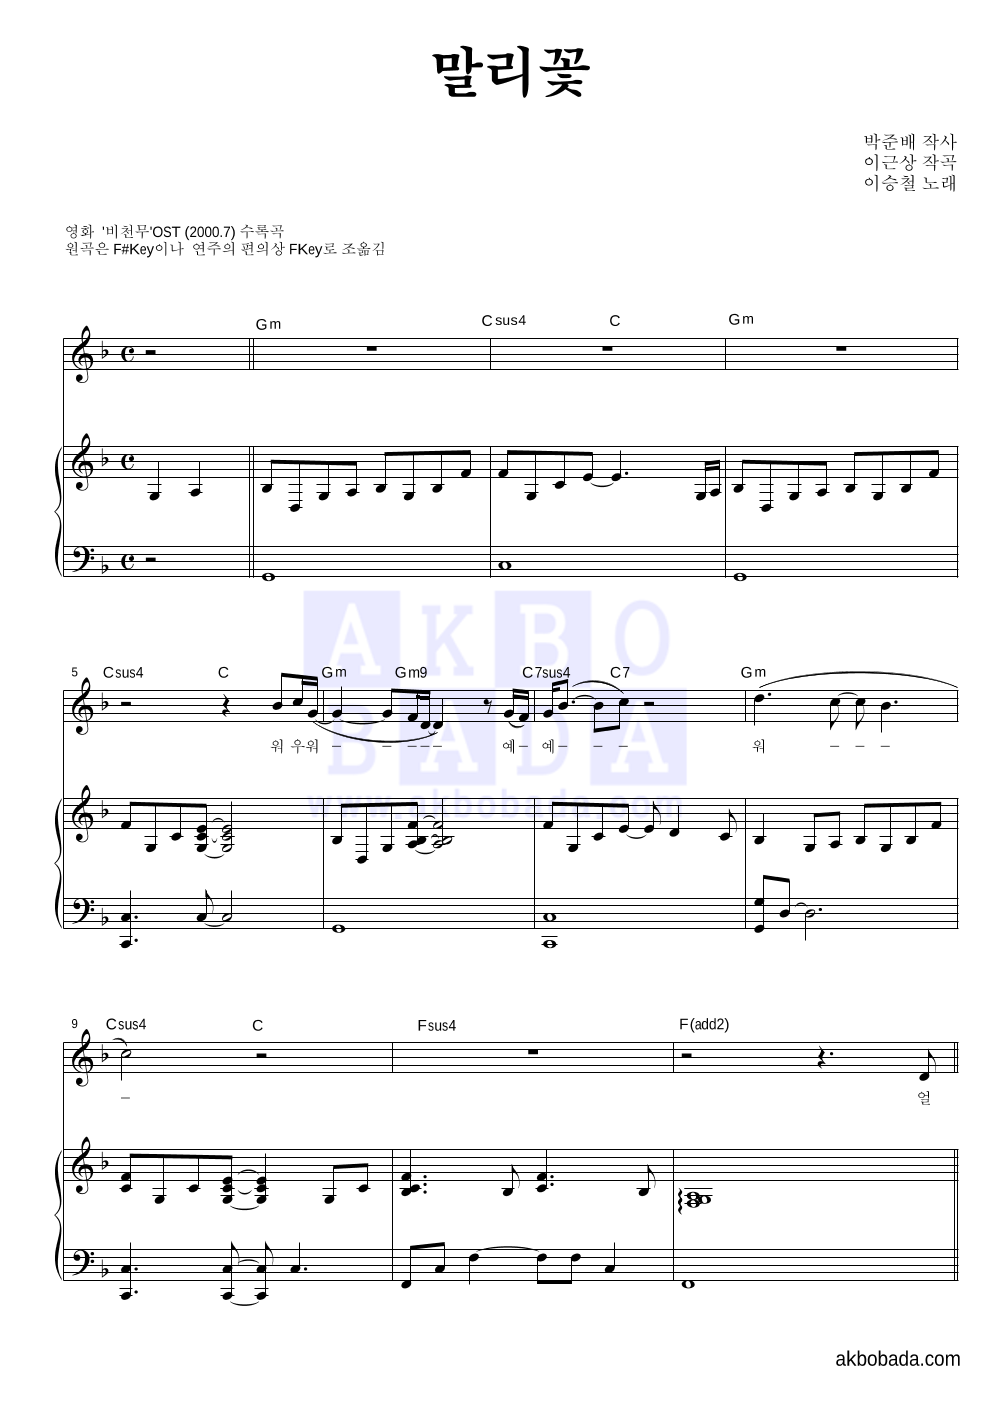 이승철 - 말리꽃 피아노 3단 악보 